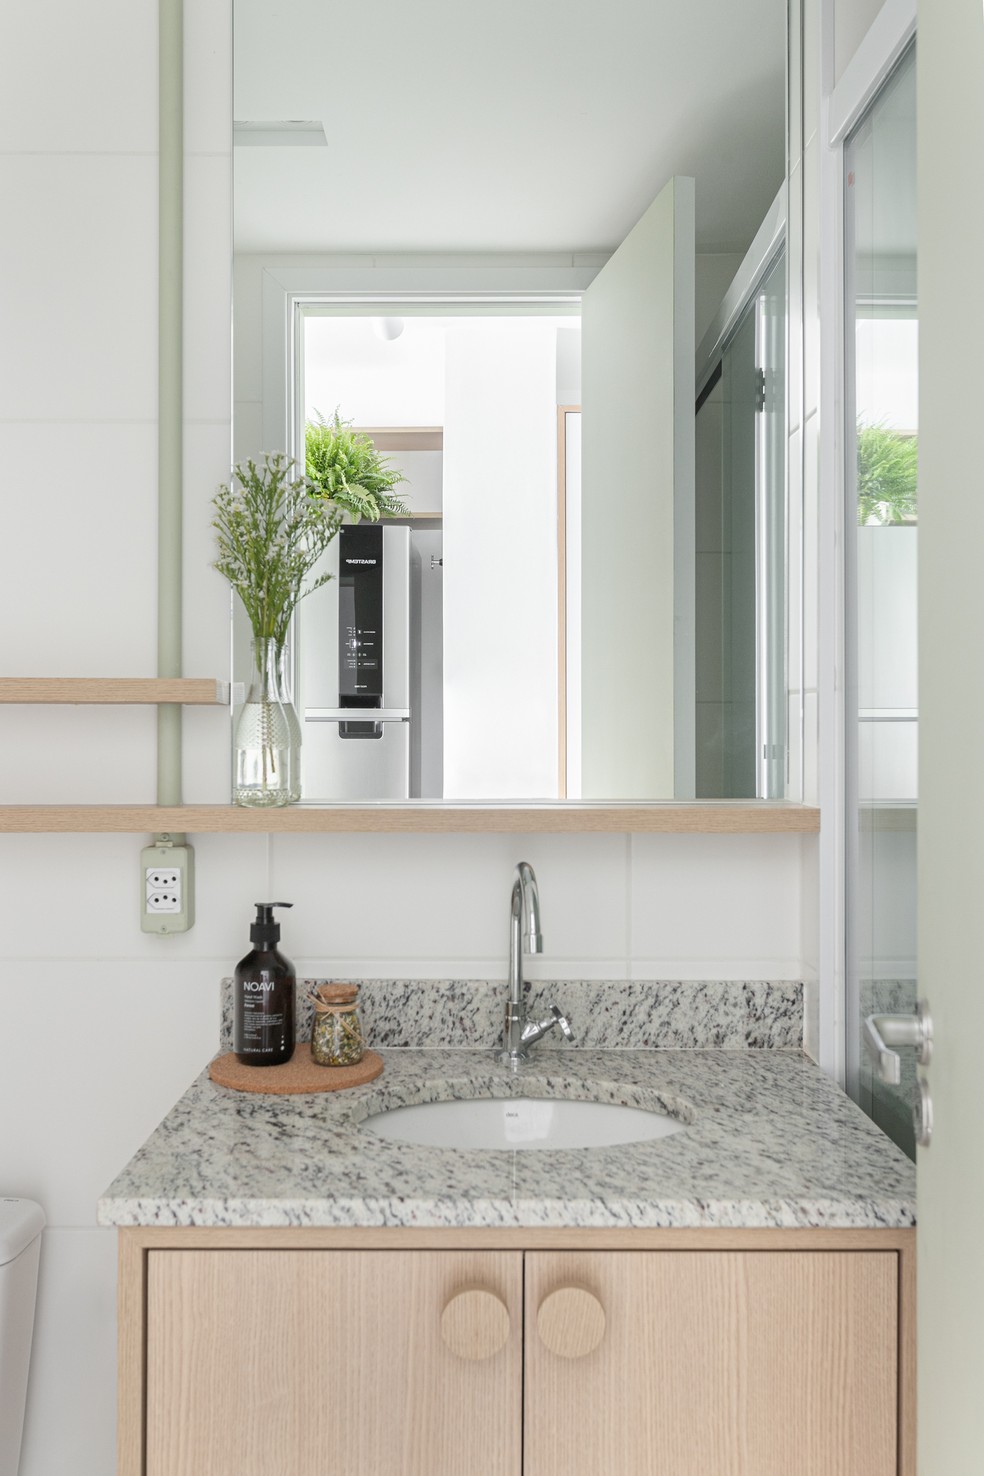 BANHEIRO | O banheiro foi o ambiente que menos sofreu alterações na obra. A madeira foi combinada com o verde na decoração — Foto: Gisele Rampazzo / Divulgação